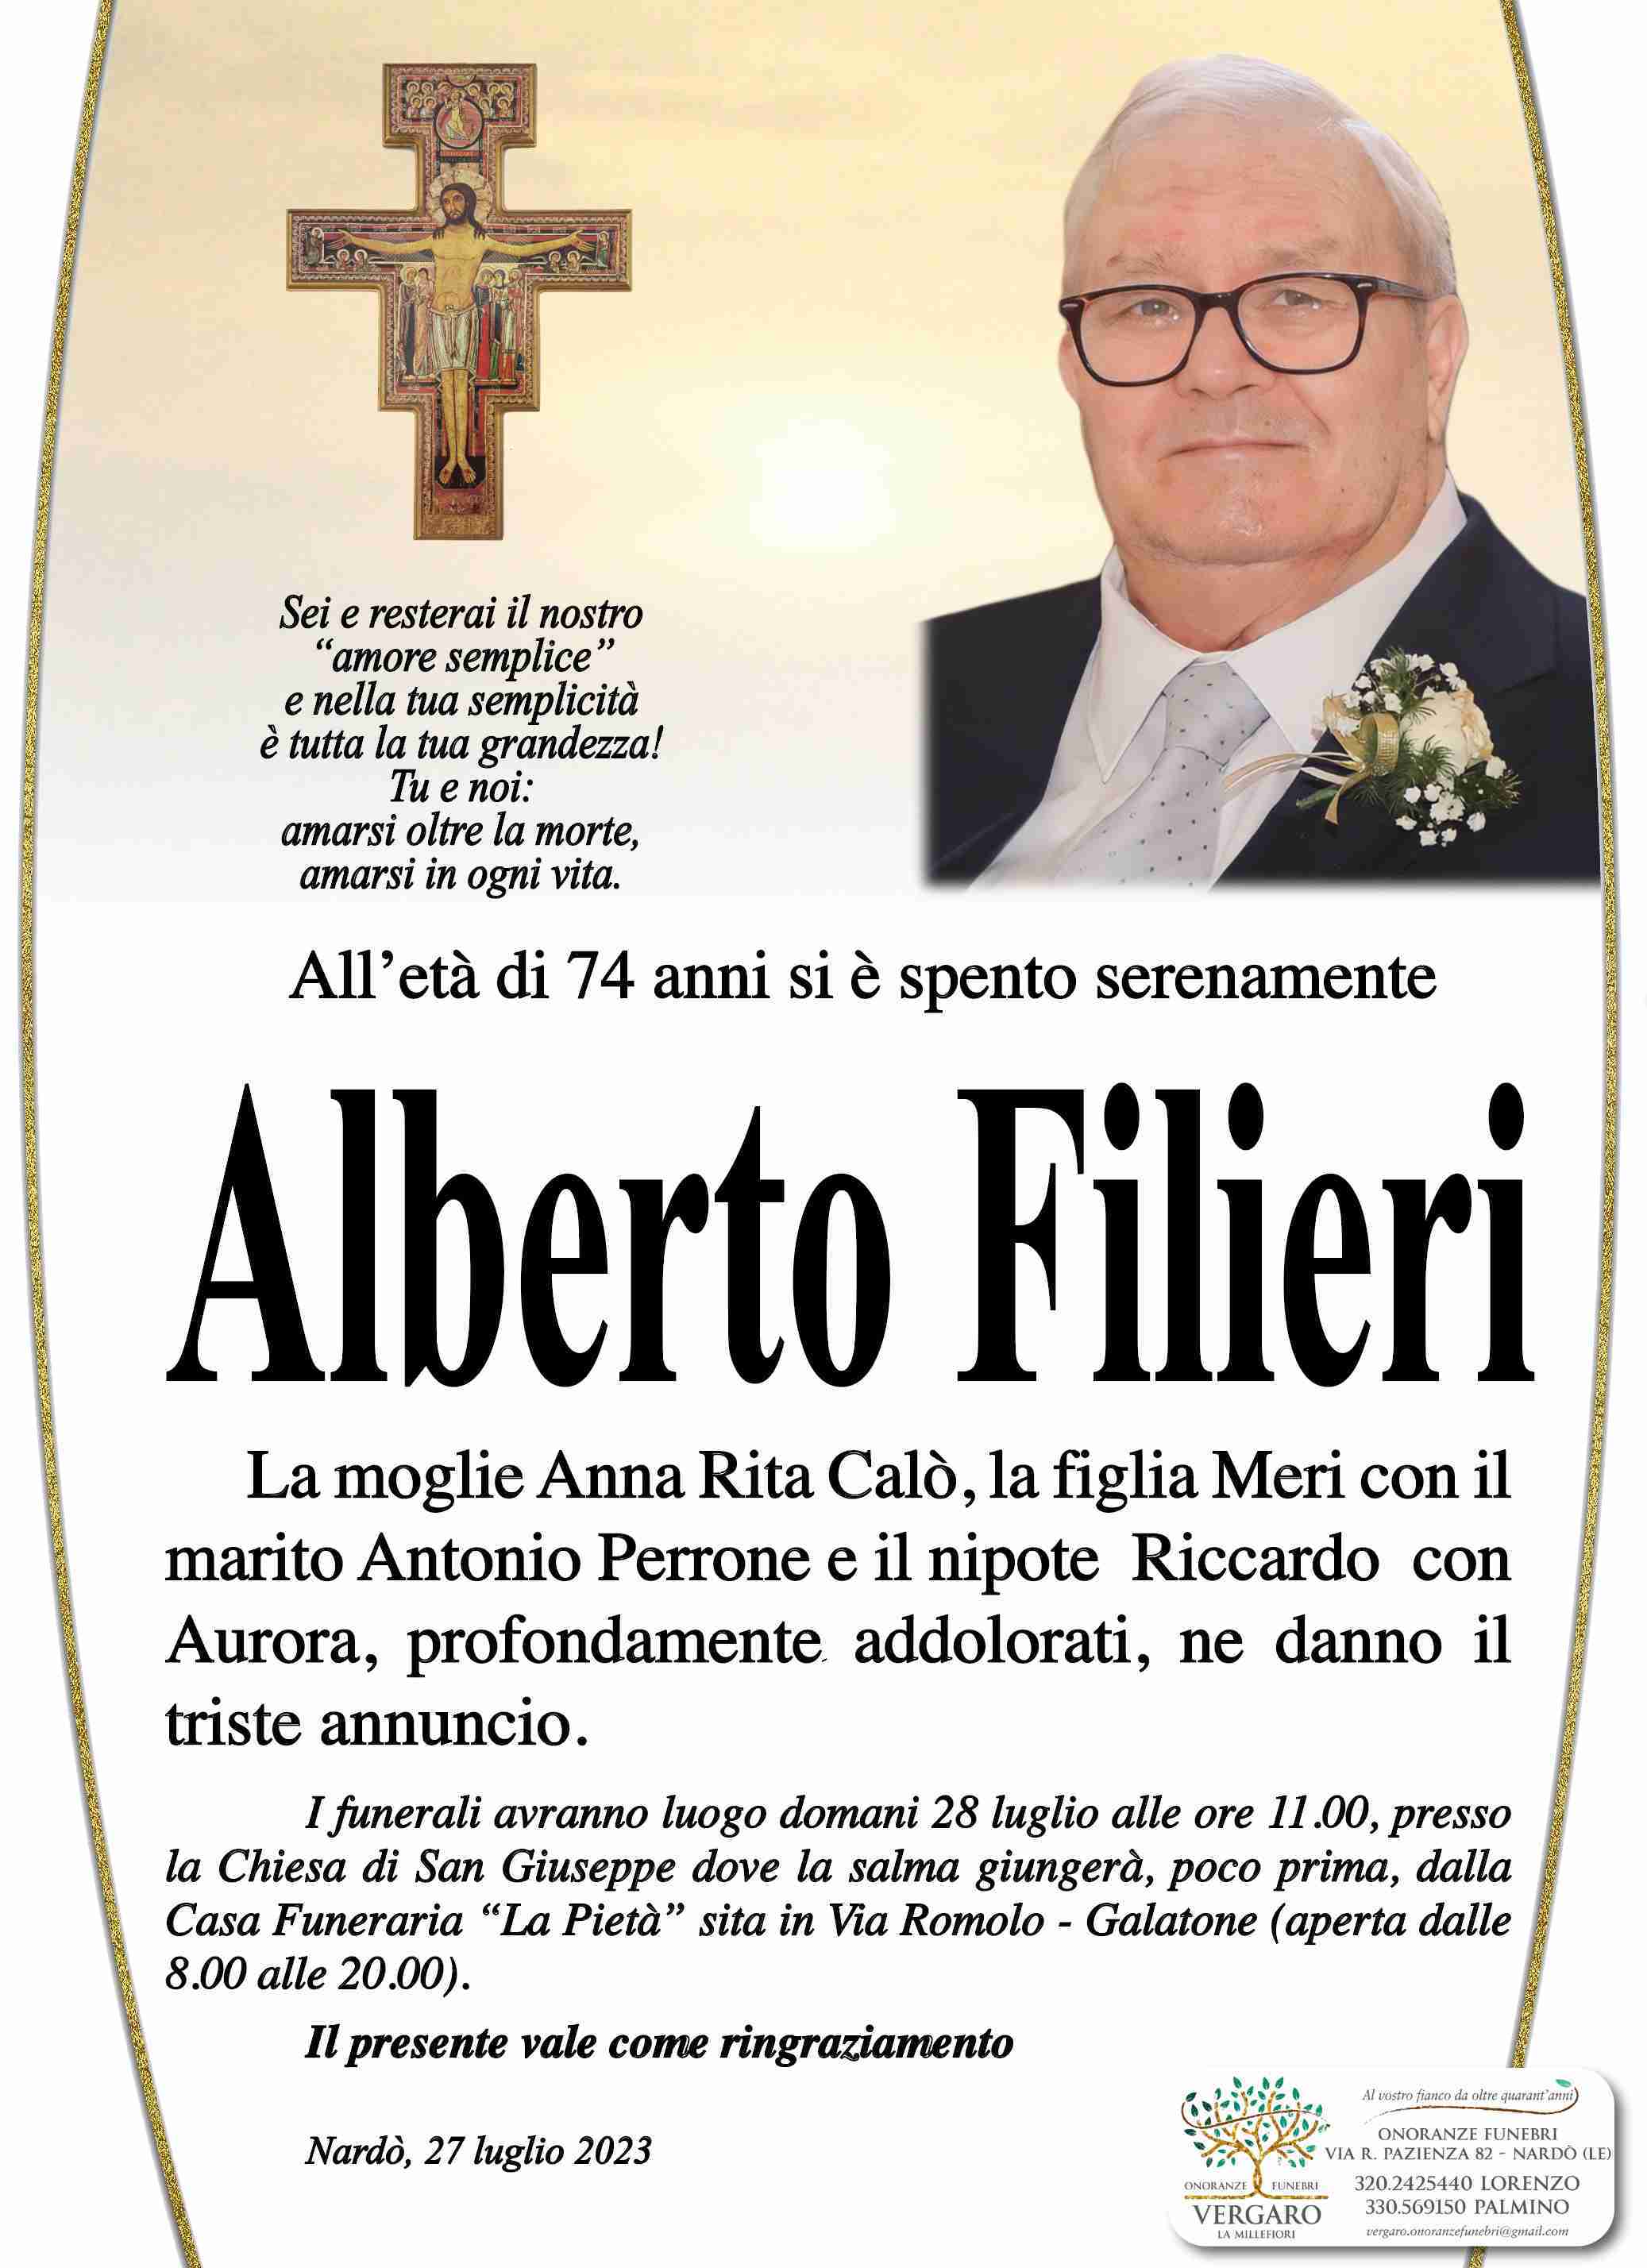 Alberto Filieri